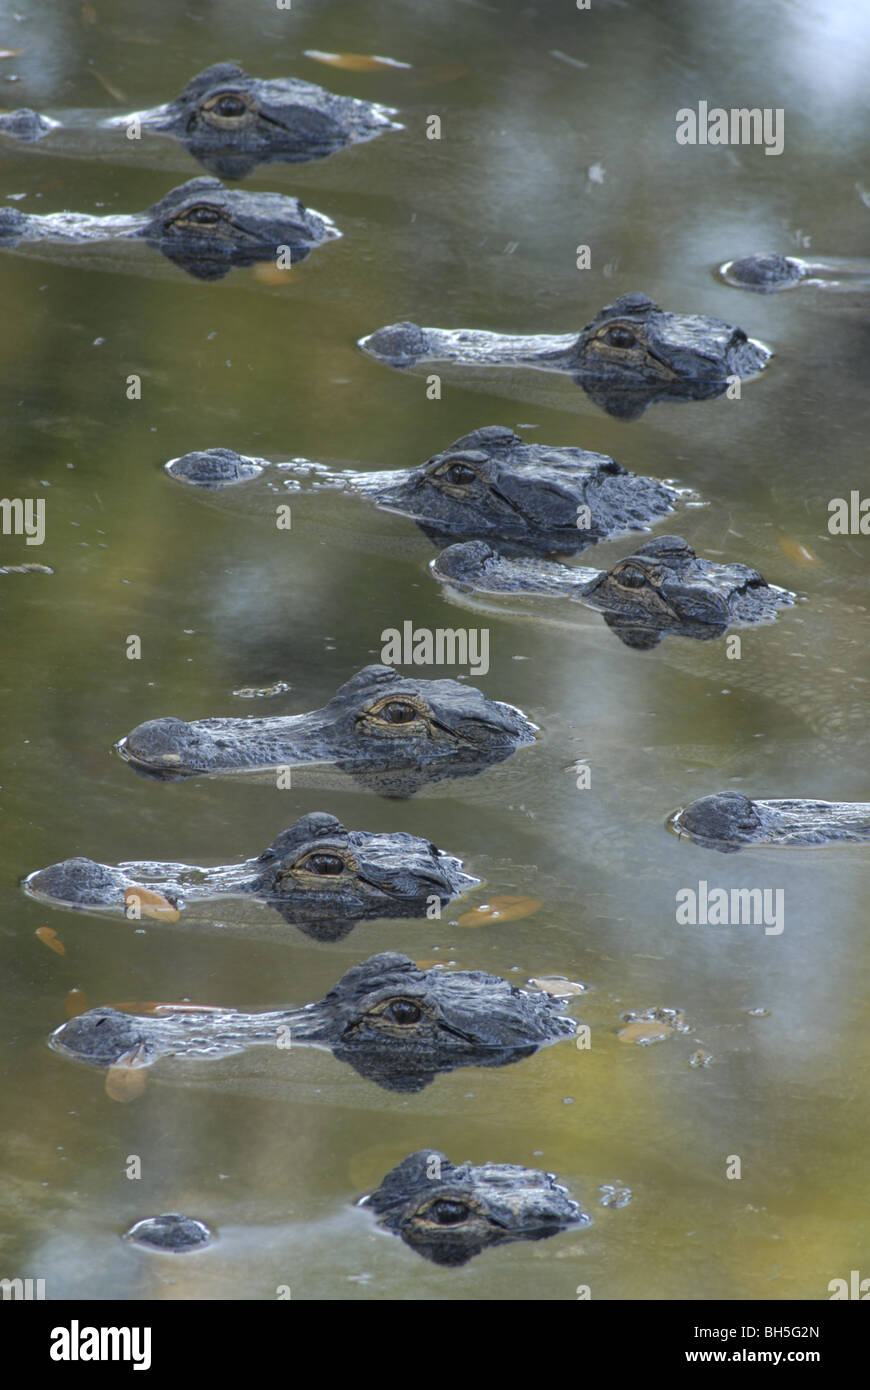 Diese Krokodile leben in einer Mischung aus kleinen amerikanischen Alligatoren, Kaimane und andere Arten an der St. Augustine Alligator Farm. Stockfoto